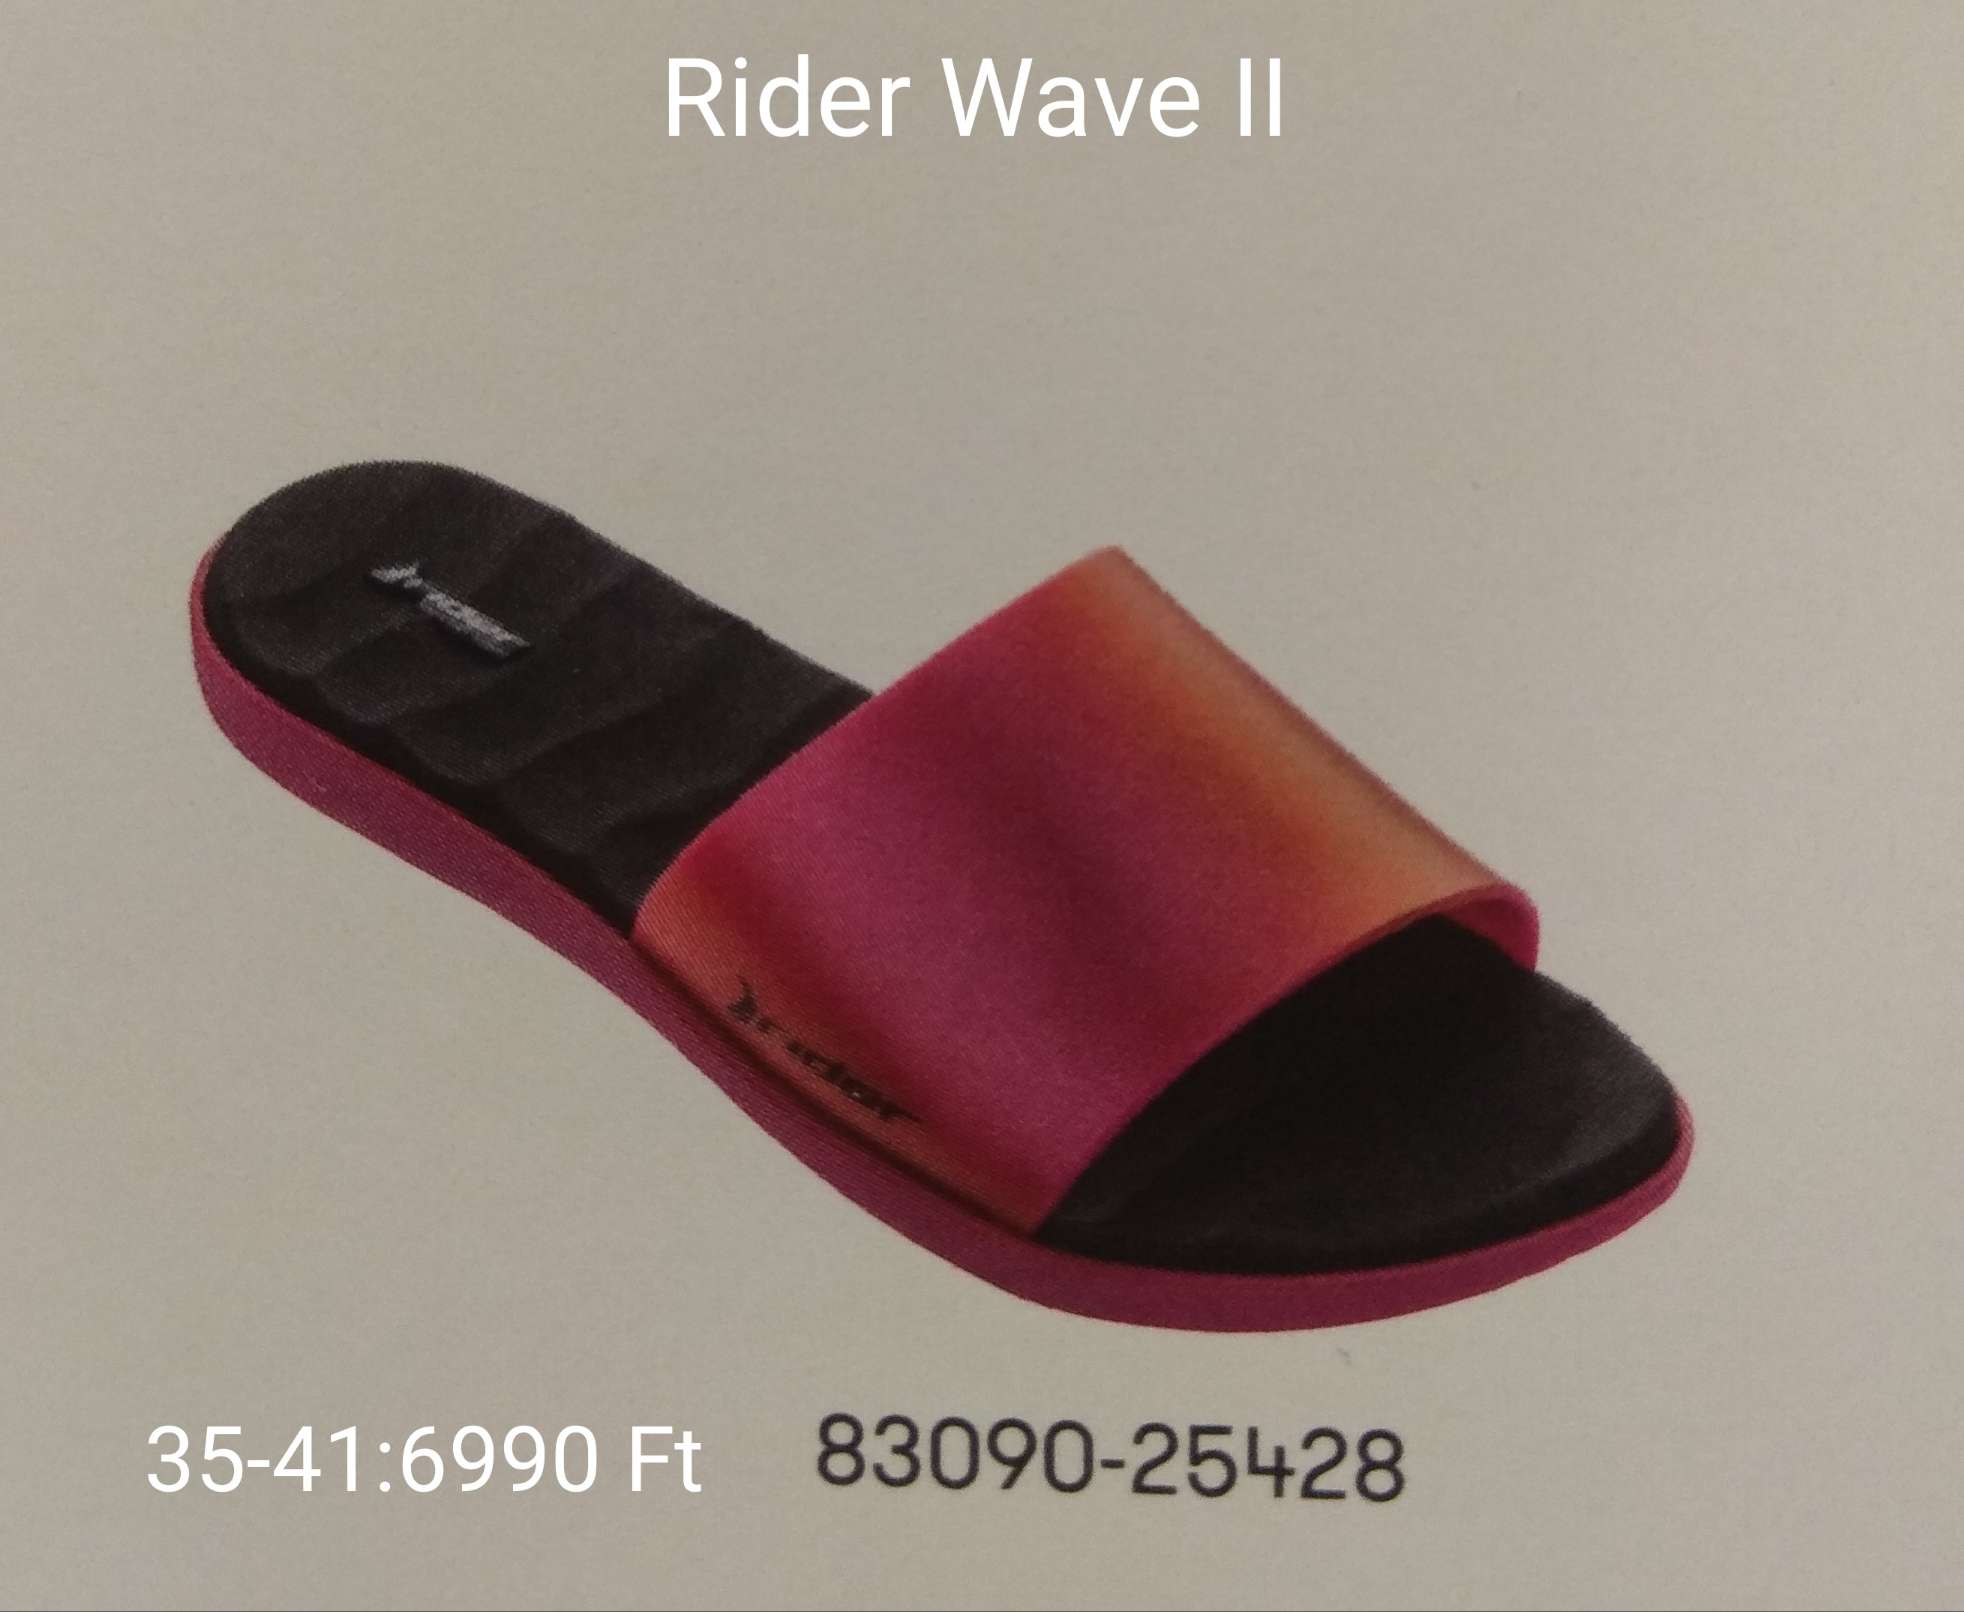 Rider Vave II